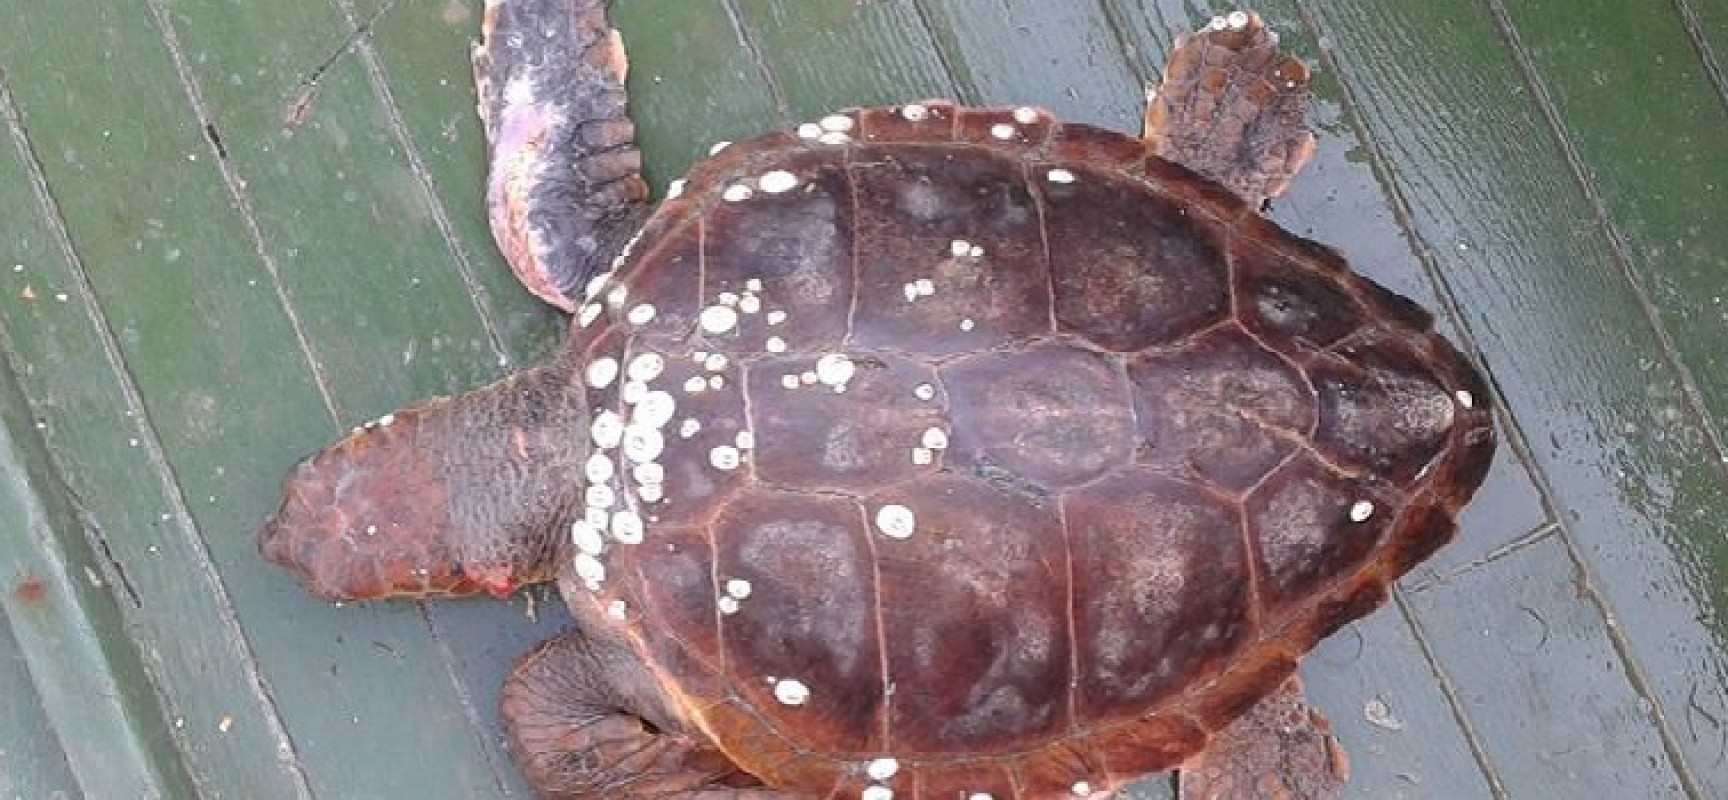 Tratto in salvo dal peschereccio “Angela Madre” un esemplare di tartaruga marina